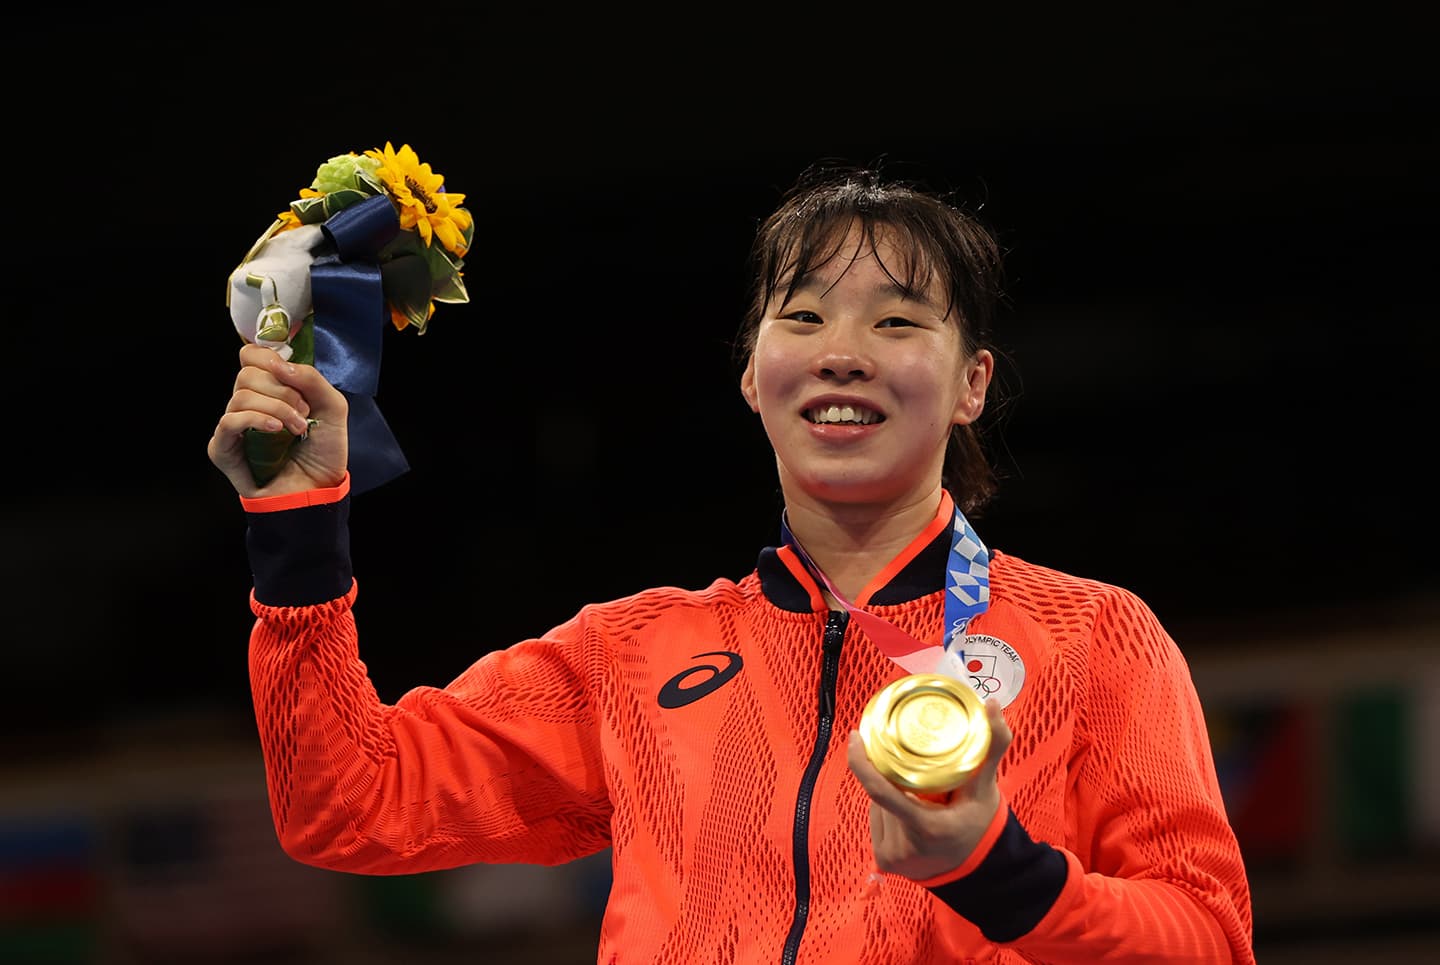 東京2020大会で金メダルを獲得した女子フェザー級の入江聖奈選手